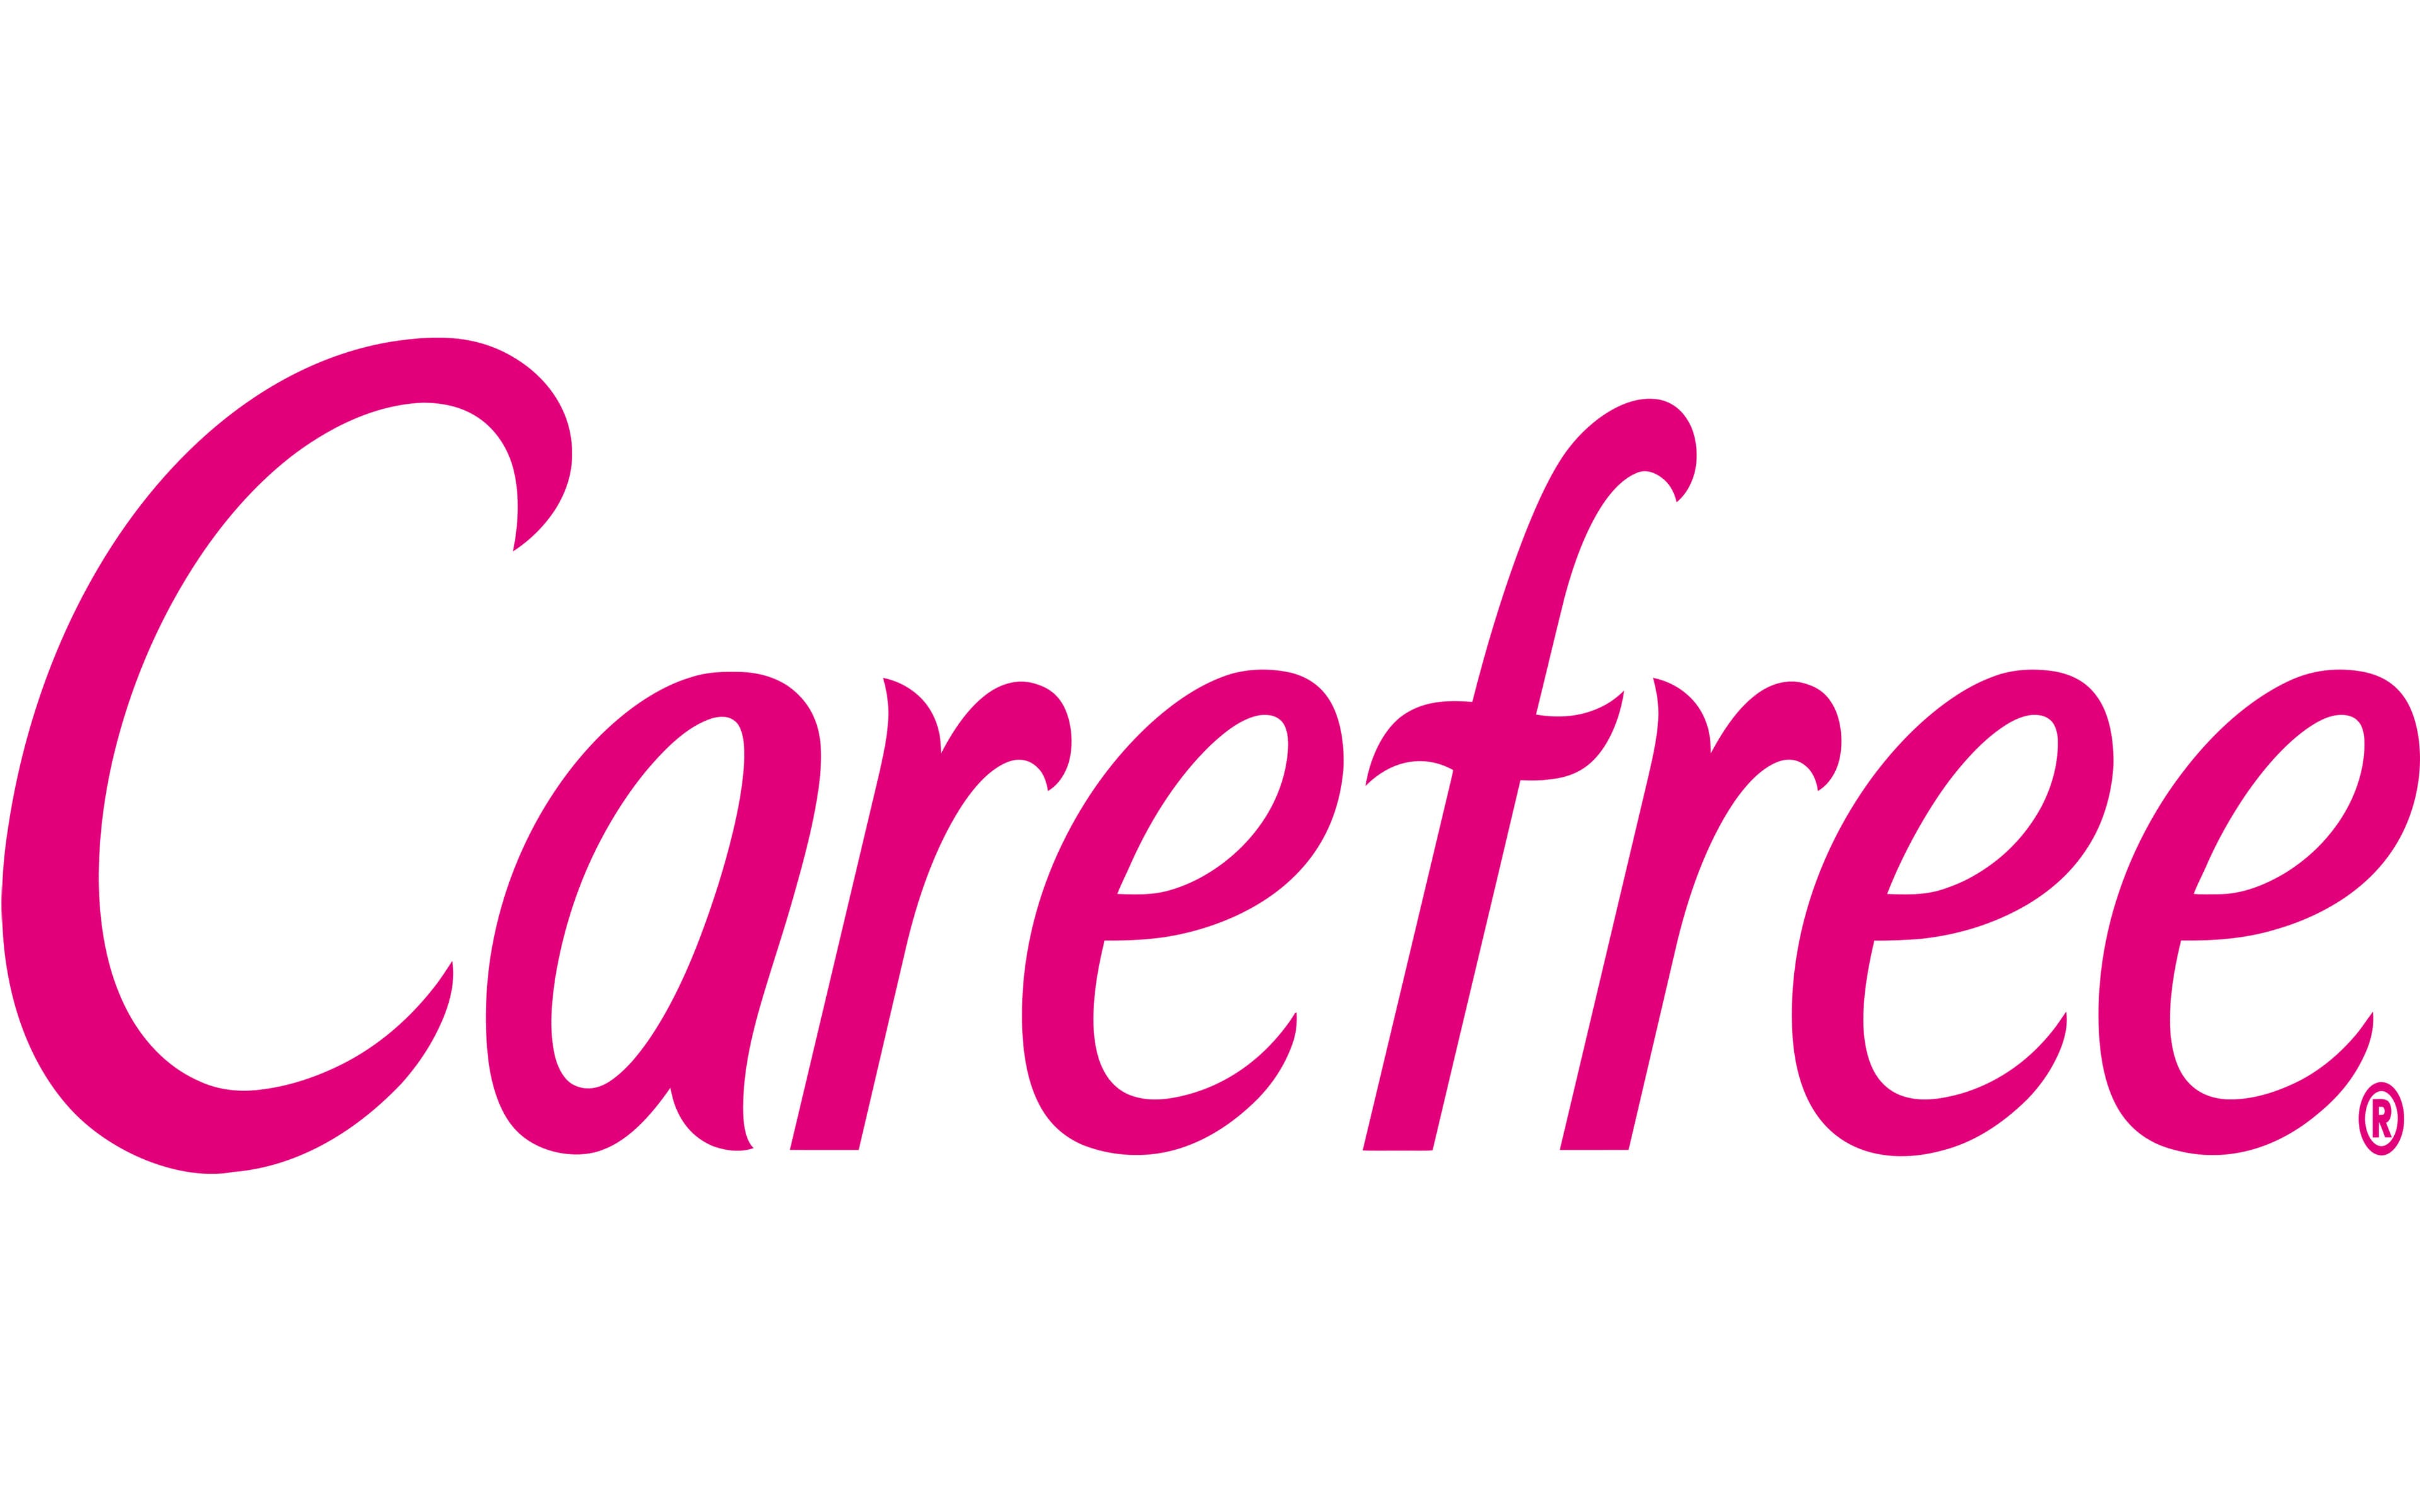 Mẫu thiết kế logo thương hiệu công ty CAREFREE